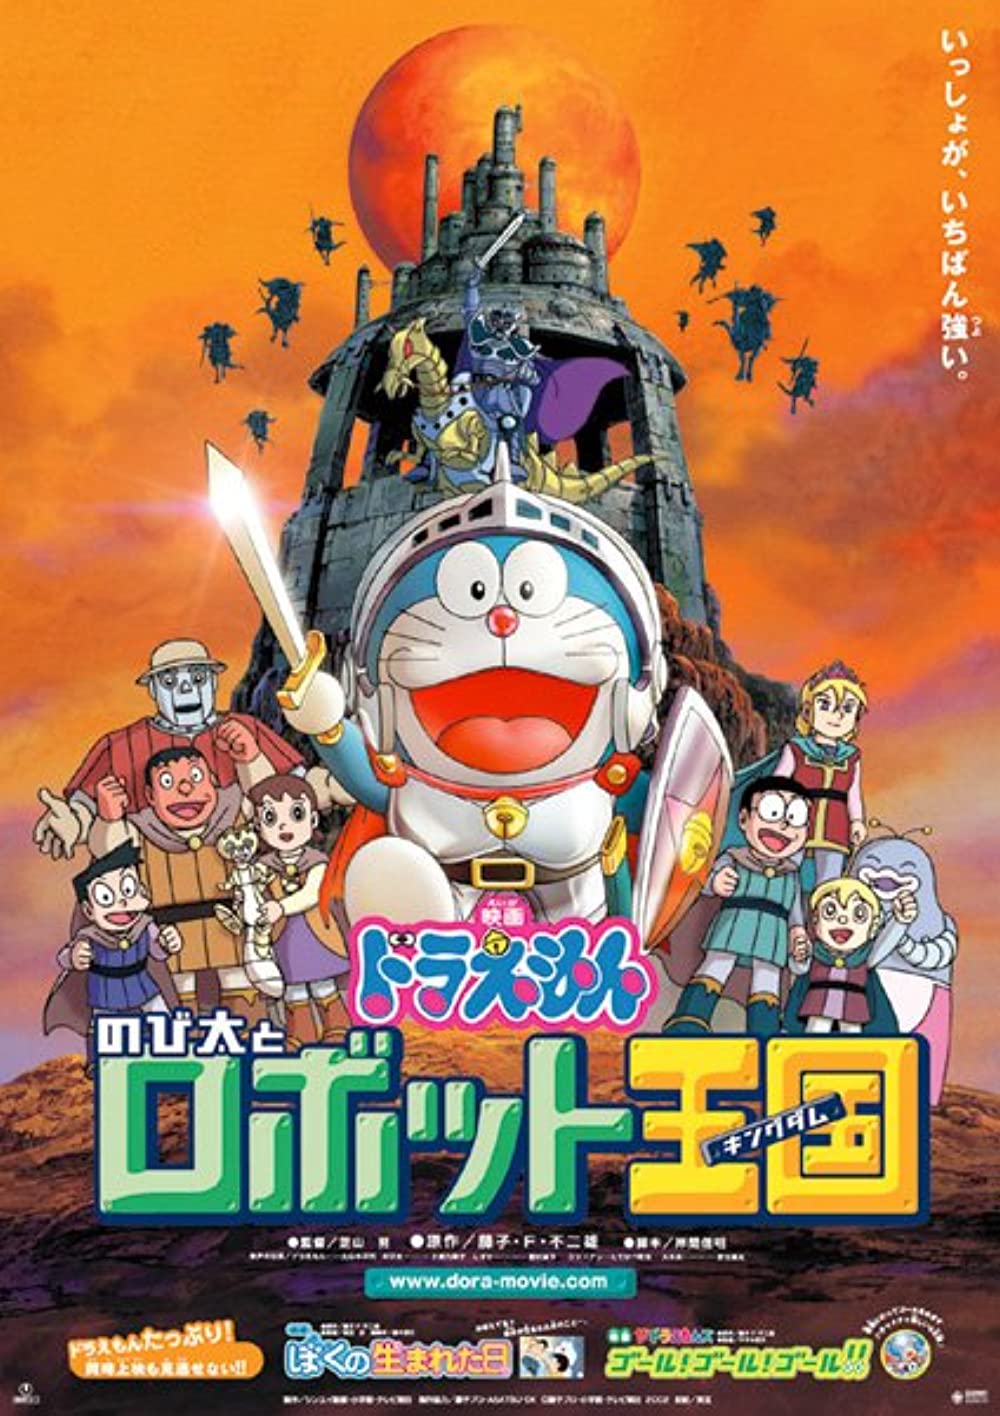 ดูหนังออนไลน์ฟรี Doraemon Nobita and the Robot Kingdom (2002) โดราเอมอน ตอน โนบิตะ ตะลุยอาณาจักรหุ่นยนต์